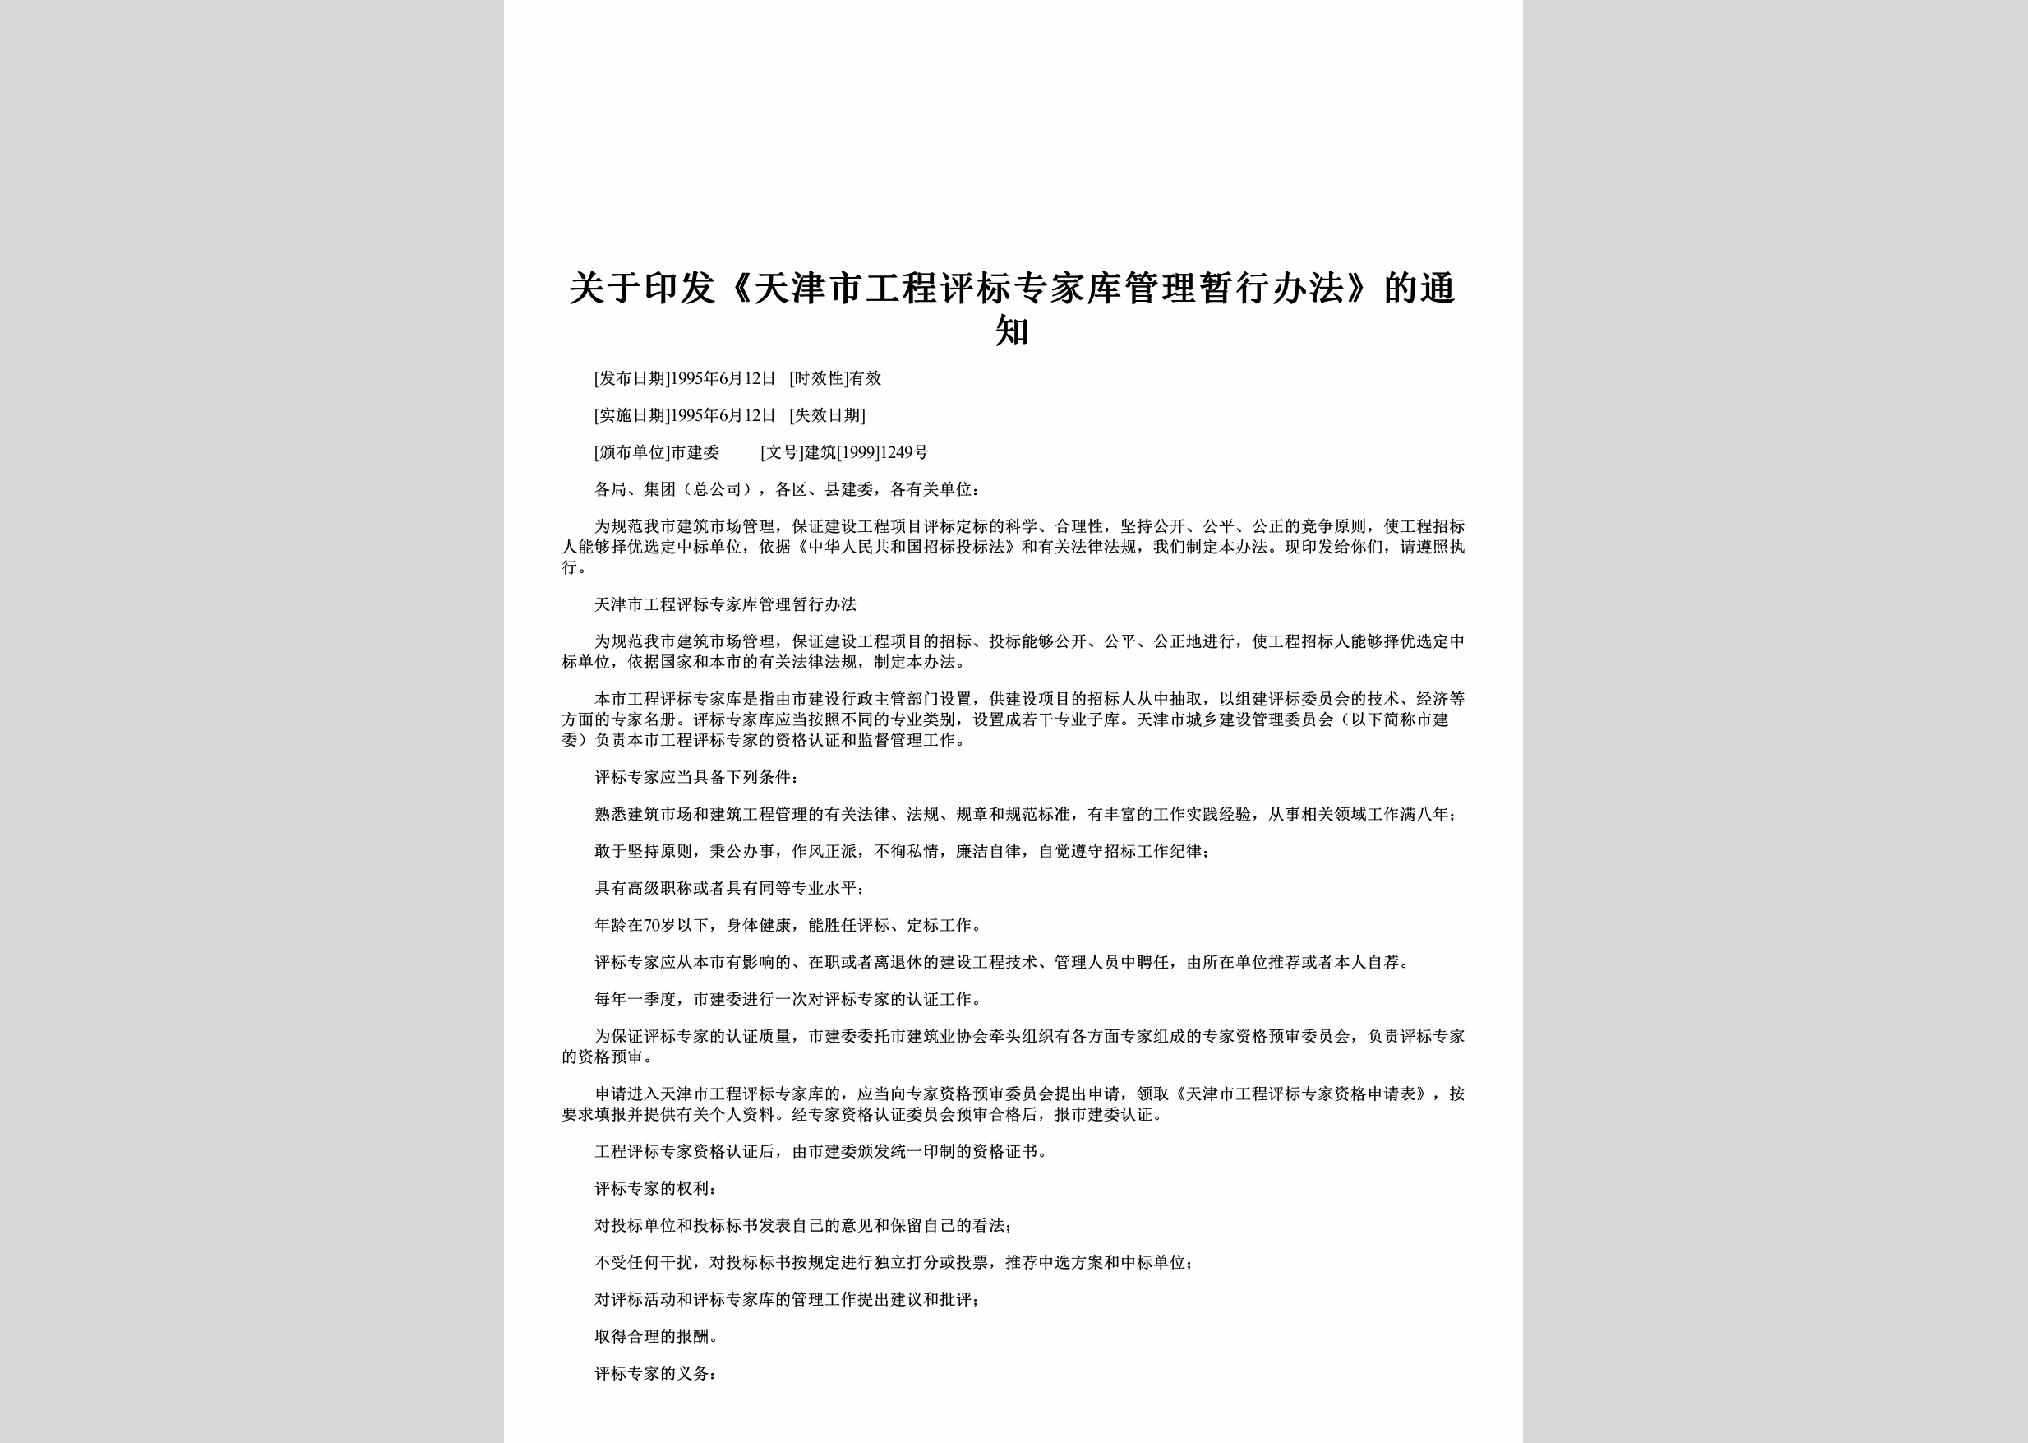 建筑[1999]1249号：关于印发《天津市工程评标专家库管理暂行办法》的通知